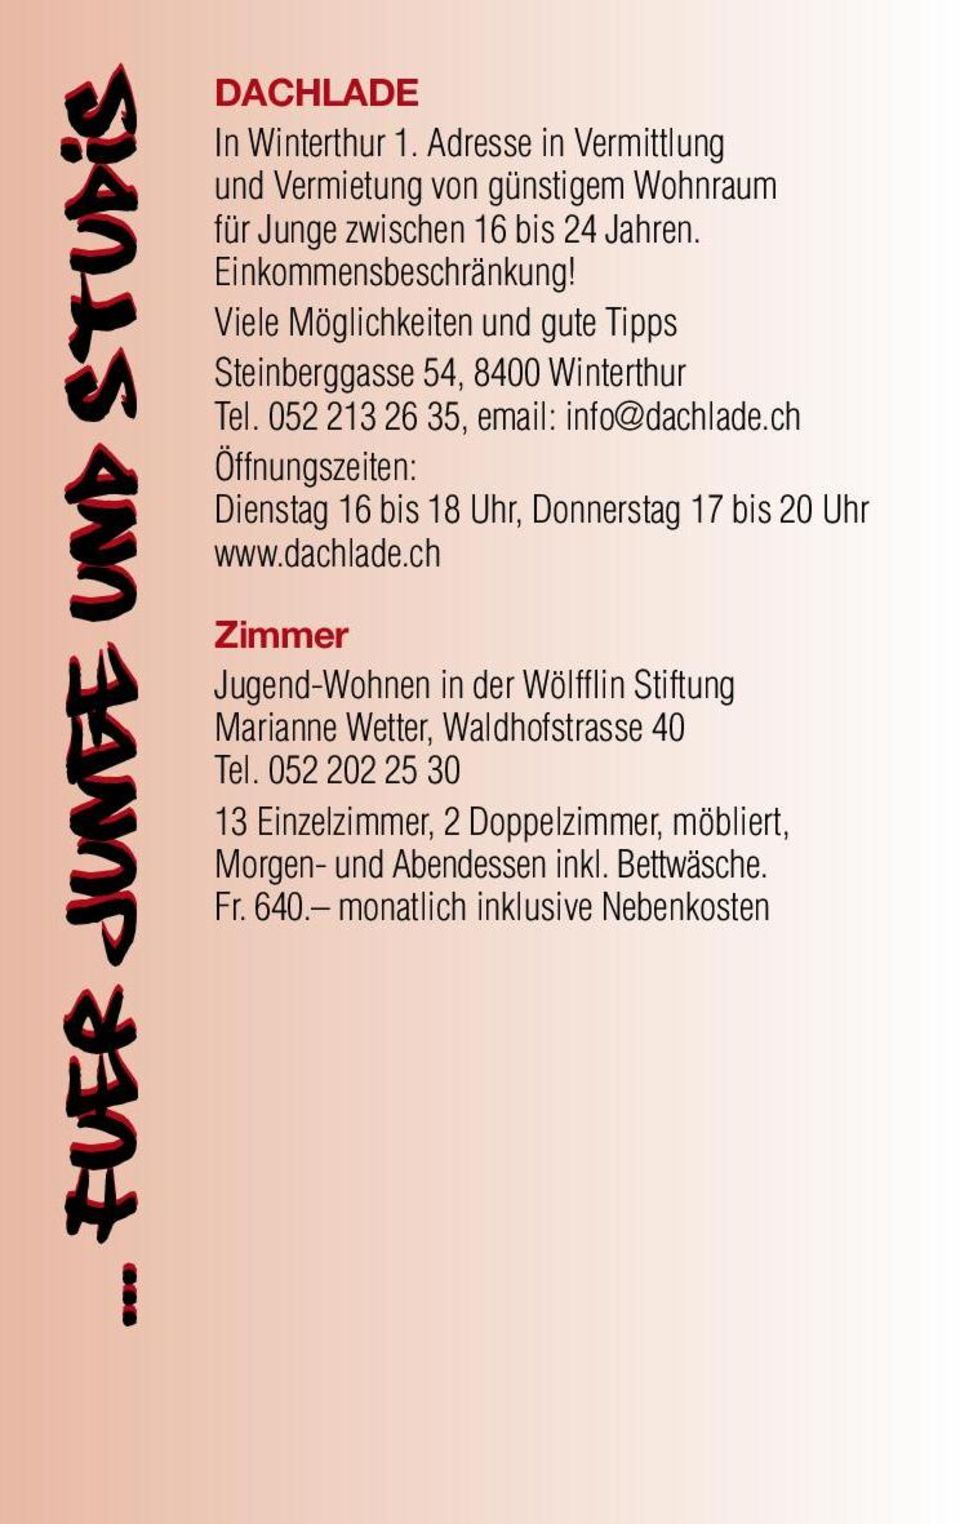 Viele Möglichkeiten und gute Tipps Steinberggasse 54, 8400 Winterthur Tel. 052 213 26 35, email: info@dachlade.